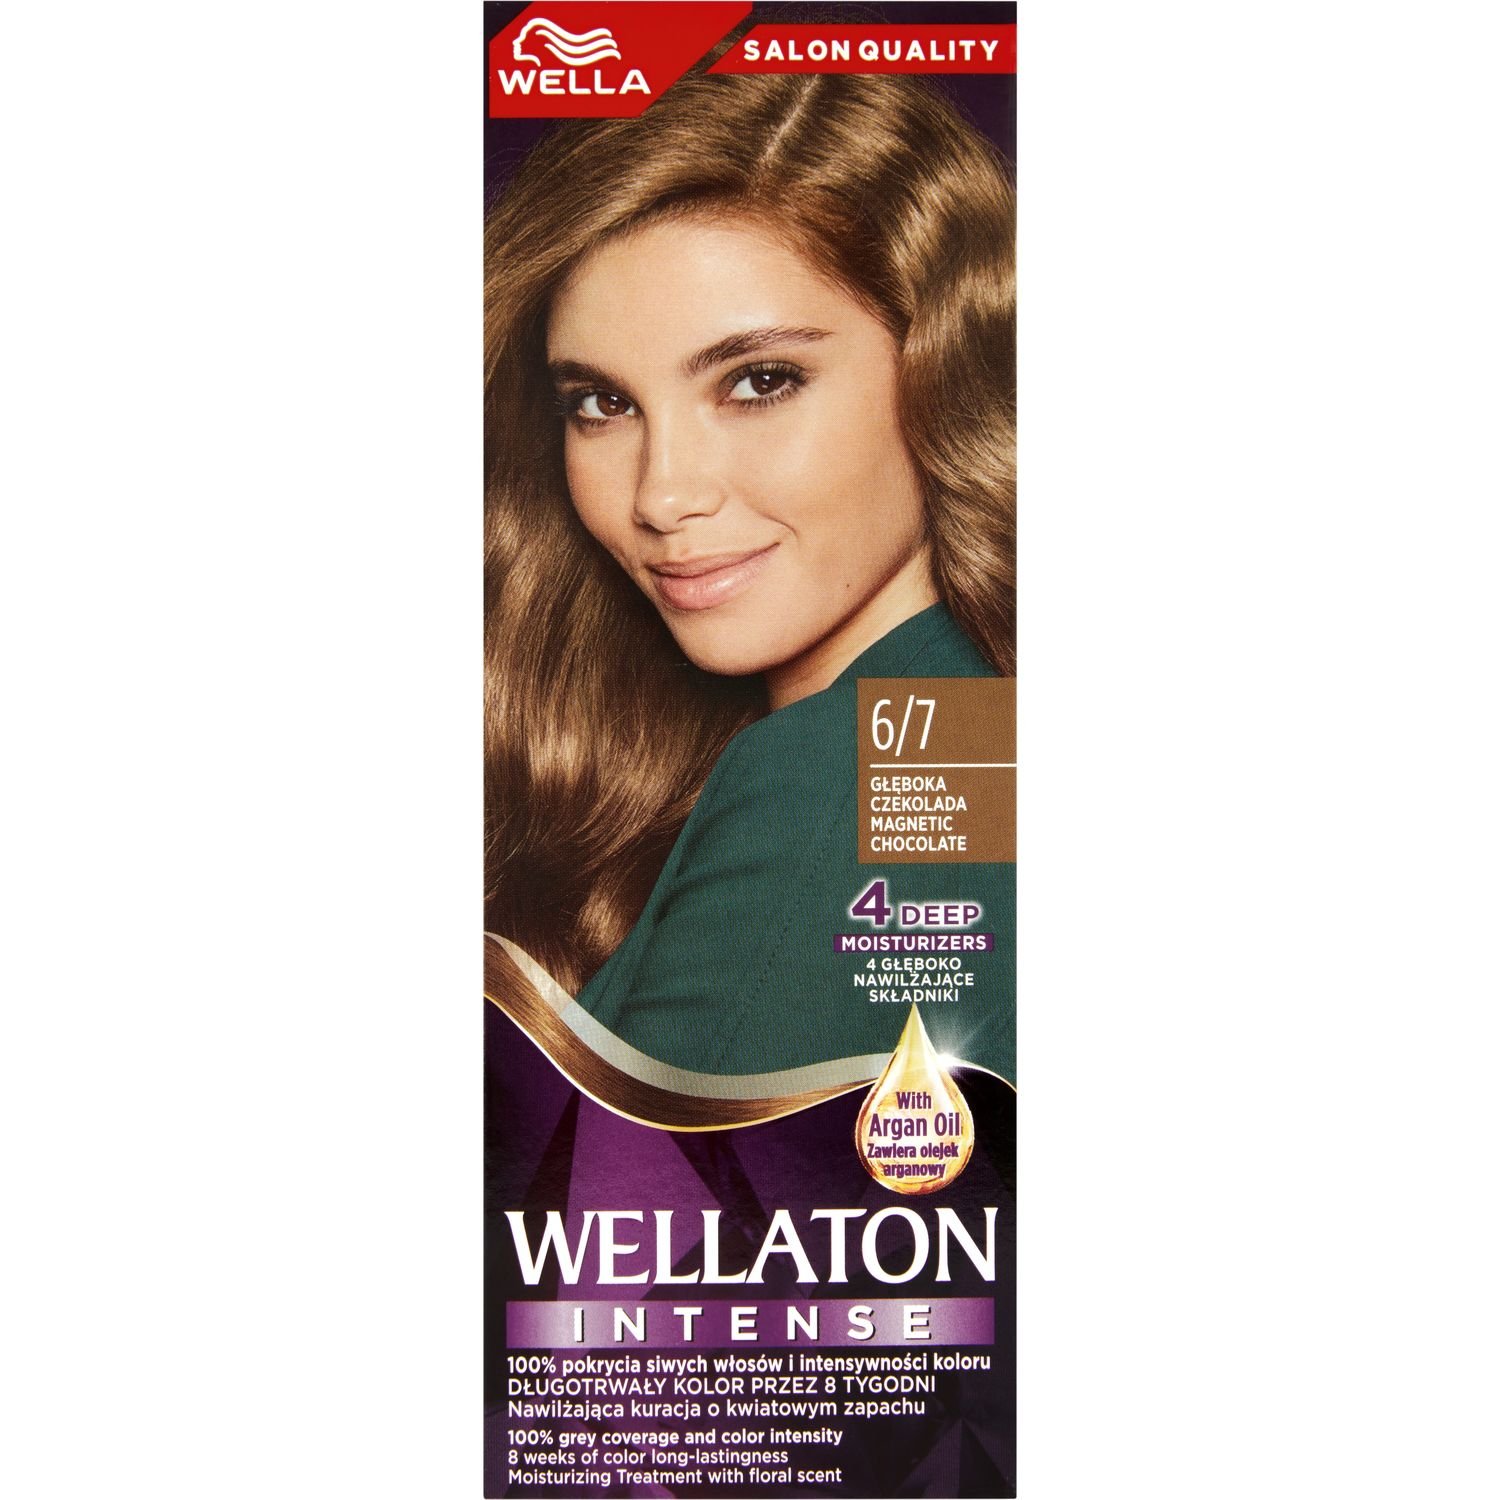 Інтенсивна крем-фарба для волосся Wellaton, відтінок 6/7 (Магнітичний шоколад), 110 мл - фото 2